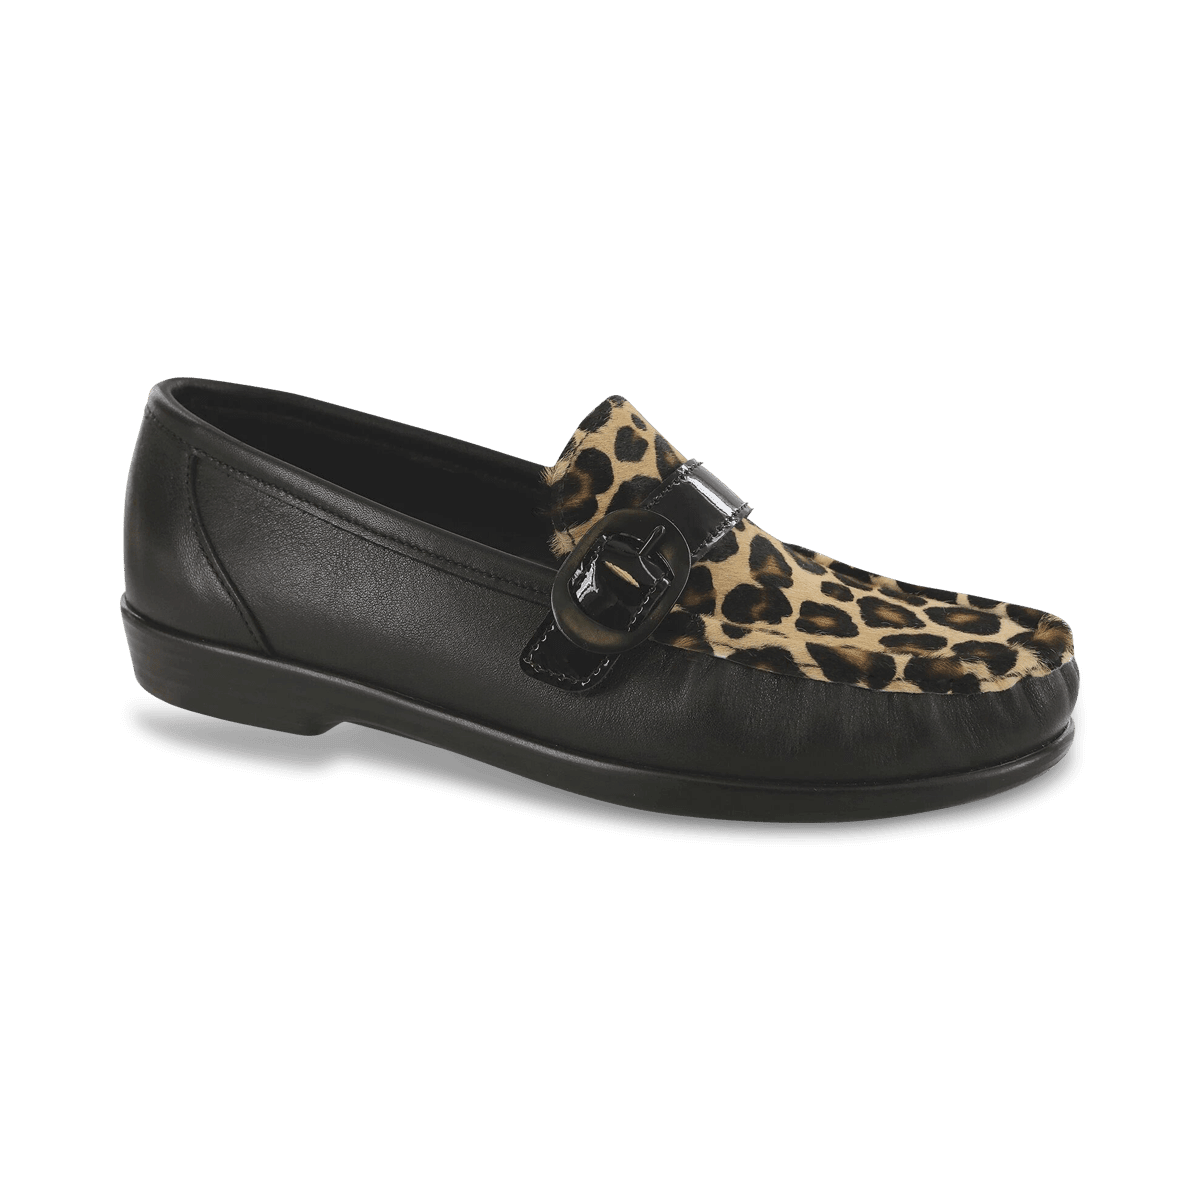 Lara Black / Leopard | SAS Shoes | SASnola.com | Reviews on Judge.me